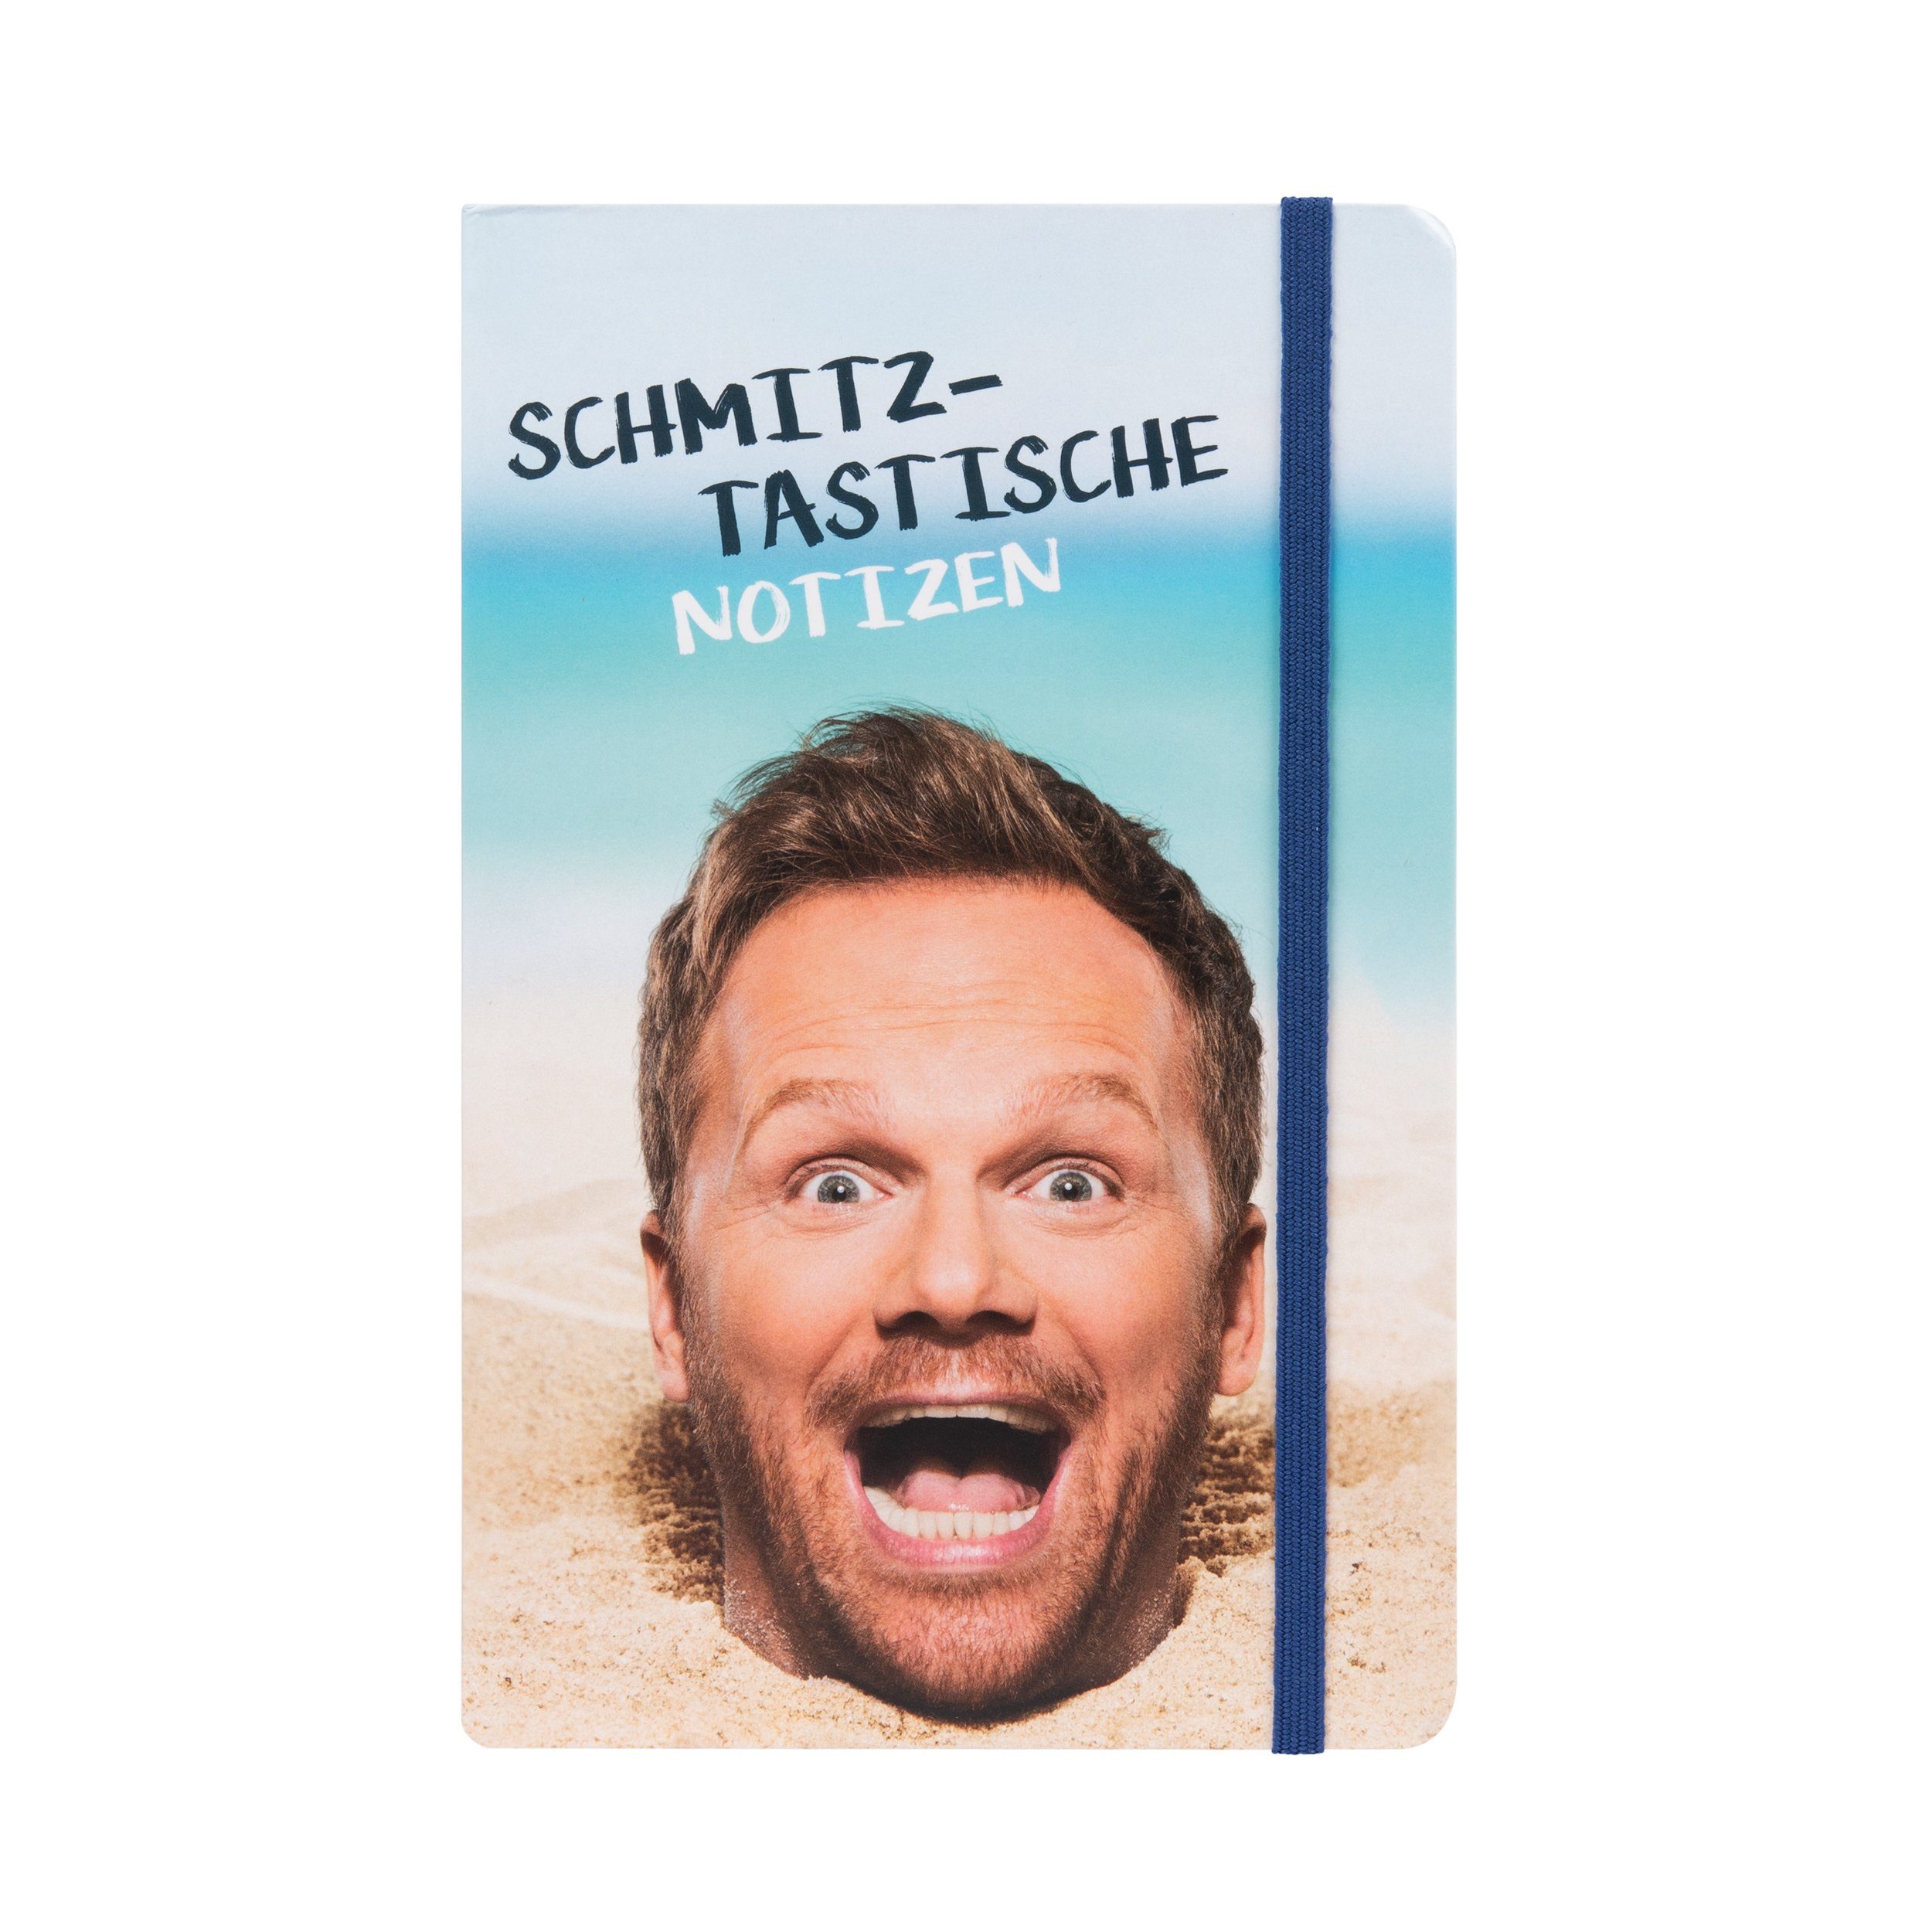 United Labels® Notizbuch Ralf Schmitz Notizbuch – Schmitztastische Notizen 80 Blatt, Gummiband